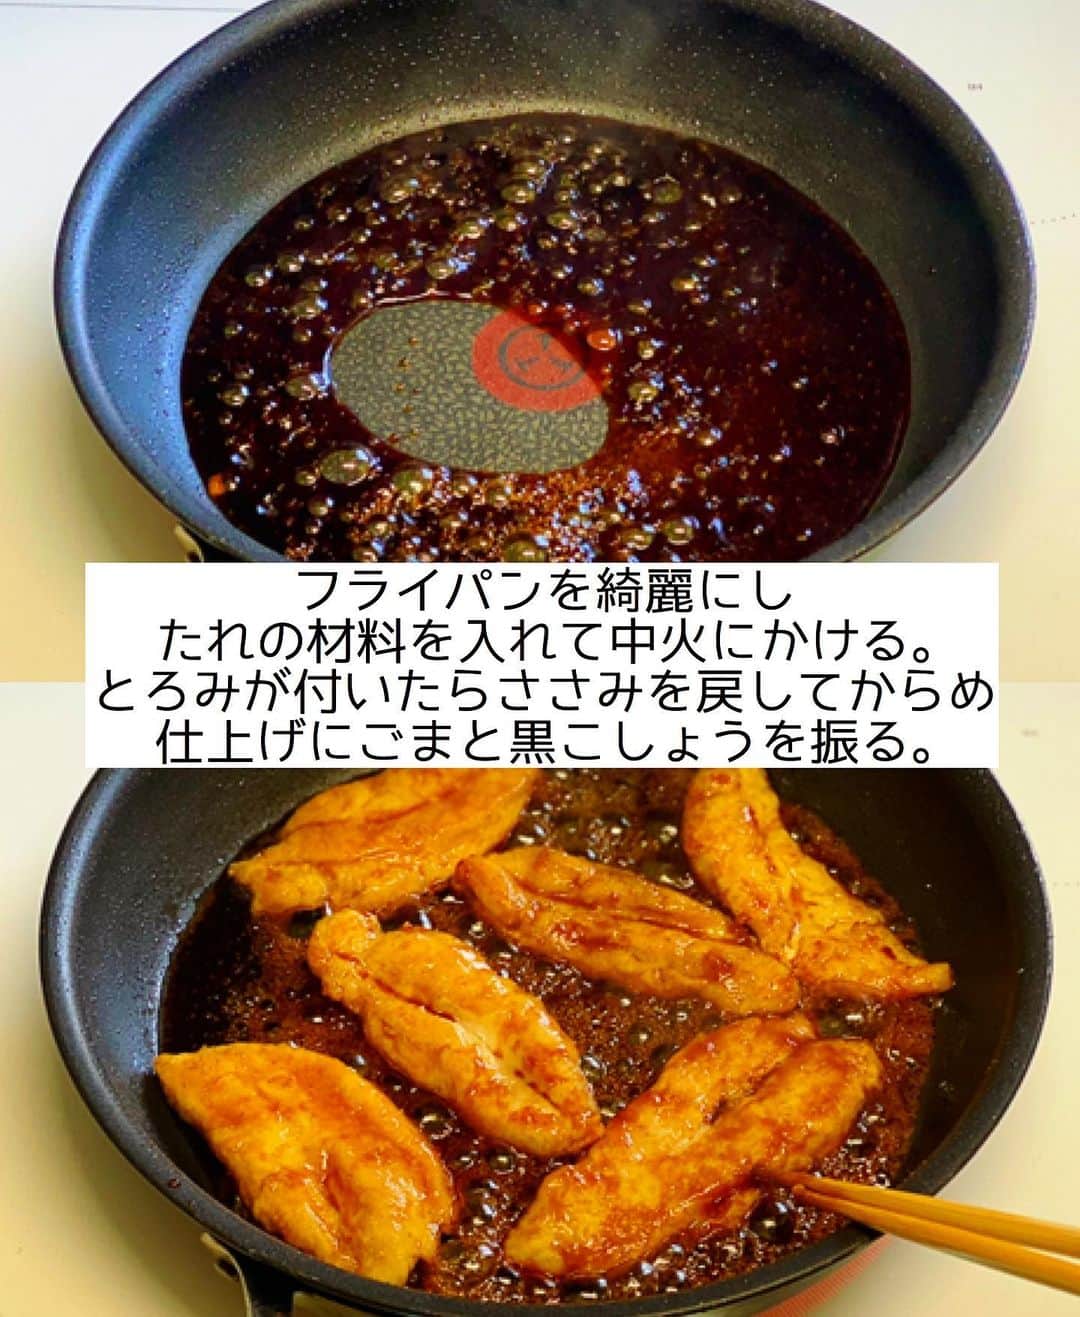 Mizuki【料理ブロガー・簡単レシピ】さんのインスタグラム写真 - (Mizuki【料理ブロガー・簡単レシピ】Instagram)「・﻿ 【#レシピ 】ーーーーーーー﻿ 丸ごと！ささみの名古屋風﻿ ーーーーーーーーーーーーー﻿ ﻿ ﻿ ﻿ おはようございます(*^^*)﻿ ﻿ 今日ご紹介させていただくのは﻿ \ 丸ごと！ささみの名古屋風 /﻿ ﻿ 1本まるっと焼いたささみに﻿ 名古屋風甘辛だれをからめました♩﻿ 仕上げの黒こしょうがアクセントになって﻿ ごはんもお酒もすすみますよー♡﻿ ﻿ フライパンひとつでできるので﻿ よかったらお試し下さいね(*^^*)﻿ ﻿ ﻿ ﻿ ＿＿＿＿＿＿＿＿＿＿＿＿＿＿＿＿＿＿＿＿﻿ 【2〜3人分】﻿ ささみ...6本﻿ ●酒...小1﻿ ●塩こしょう...少々﻿ 片栗粉...適量﻿ サラダ油...大4﻿ ☆醤油・みりん...各大2﻿ ☆酒・砂糖...各大1﻿ ごま・粗挽き黒こしょう...各適量﻿ ﻿ 1.ささみは真ん中に切り込みを入れて身を開き(気になる方はここで筋を除く)、●を揉み込み片栗粉をまぶす。﻿ 2.フライパンにサラダ油を中火で熱し、1を両面焼いて火を通し、一旦取り出しておく。﻿ 3.フライパンを綺麗にし、☆を入れて中火にかける。たれにとろみが付いたら2を戻し入れてからめ、仕上げにごまと黒こしょうを振る。﻿ ￣￣￣￣￣￣￣￣￣￣￣￣￣￣￣￣￣￣￣￣﻿ ﻿ ﻿ ﻿ ﻿ 《ポイント》﻿ ♦︎片栗粉はたっぷりまぶして下さい♩﻿ ♦︎鶏むね肉を削ぎ切りにして作っても♩﻿ ﻿ ﻿ ﻿ ﻿ ﻿ ﻿ ﻿ 新刊(エッセイ本)について﻿ たくさんの温かいお言葉を﻿ 本当にありがとうございます(涙)﻿ 私は肩の力が抜けたような﻿ 重たい荷物をおろしたような。﻿ 安心感と疲労感を同時に感じています。﻿ ﻿ そしてあの頃の世界に浸かると﻿ 現実との切り替えが難しくなって。﻿ 記憶を掘り起こす作業は﻿ 想像以上に忍耐が必要なものでした。﻿ だからこそ、今この場所があることを﻿ とても有難く感じています（ ;  ; ）﻿ ﻿ 今日からまたこちらの世界に戻って﻿ リスタートしますね✨﻿ (なんだかすごく眠いけど 笑)﻿ ﻿ 改めてこれからも﻿ どうぞよろしくお願い致します☺️﻿ ﻿ ﻿ ﻿ ﻿ ﻿ ﻿ ﻿ ﻿ ⭐️発売中⭐️﻿ ＿＿＿＿＿＿＿＿＿＿＿＿＿＿＿＿＿＿﻿ ホケミレシピの決定版♩﻿ \はじめてでも失敗しない/﻿ 📙#ホットケーキミックスのお菓子 📙﻿ ﻿ NHKまる得マガジンテキスト☆﻿ ホットケーキミックスで﻿ 📗絶品おやつ&意外なランチ📗﻿ ﻿ しんどくない献立、考えました♩﻿ \15分でいただきます/﻿ 📕#Mizukiの2品献立 📕﻿ ﻿ 和食をもっとカジュアルに♩﻿ \毎日のごはんがラクになる/﻿ 📘#Mizukiの今どき和食 📘﻿ ﻿ 重版しました！﻿ ありがとうございます😭﻿ 📗ラクしておいしい！#1品晩ごはん 📗﻿ ﻿ 摂食障害から料理研究家になるまでを綴った﻿ はじめてのエッセイ本﻿ 📙#普通のおいしいをつくるひと 📙﻿ ￣￣￣￣￣￣￣￣￣￣￣￣￣￣￣￣￣￣￣﻿ ﻿ ﻿ ﻿ ﻿ ﻿ ＿＿＿＿＿＿＿＿＿＿＿＿＿＿＿＿＿＿﻿ レシピを作って下さった際や﻿ レシピ本についてのご投稿には﻿ タグ付け( @mizuki_31cafe )して﻿ お知らせいただけると嬉しいです😊💕﻿ ￣￣￣￣￣￣￣￣￣￣￣￣￣￣￣￣￣￣﻿ ﻿ ﻿ ﻿ ﻿ ﻿ #ささみ#甘辛#名古屋風#Mizuki#簡単レシピ#時短レシピ#節約レシピ#料理#フーディーテーブル#マカロニメイト#おうちごはん#デリスタグラマー#料理好きな人と繋がりたい#おうちごはんlover#写真好きな人と繋がりたい#foodpic#cooking#recipe#lin_stagrammer#foodporn#yummy#f52grams#ささみの名古屋風m」1月29日 8時17分 - mizuki_31cafe